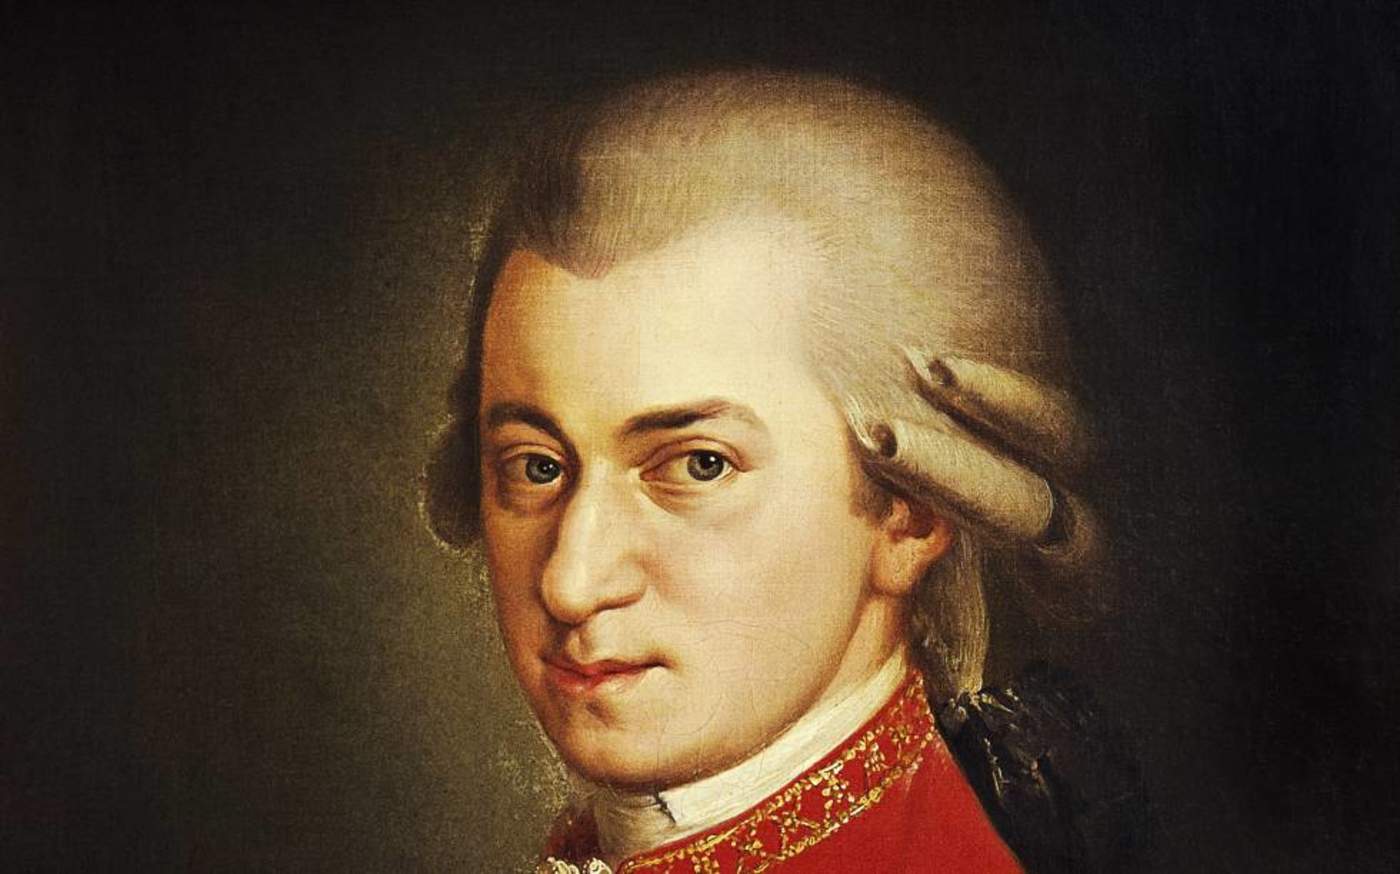 1756: Llega al mundo Wolfgang Amadeus Mozart, uno de los más grandes en la escena musical